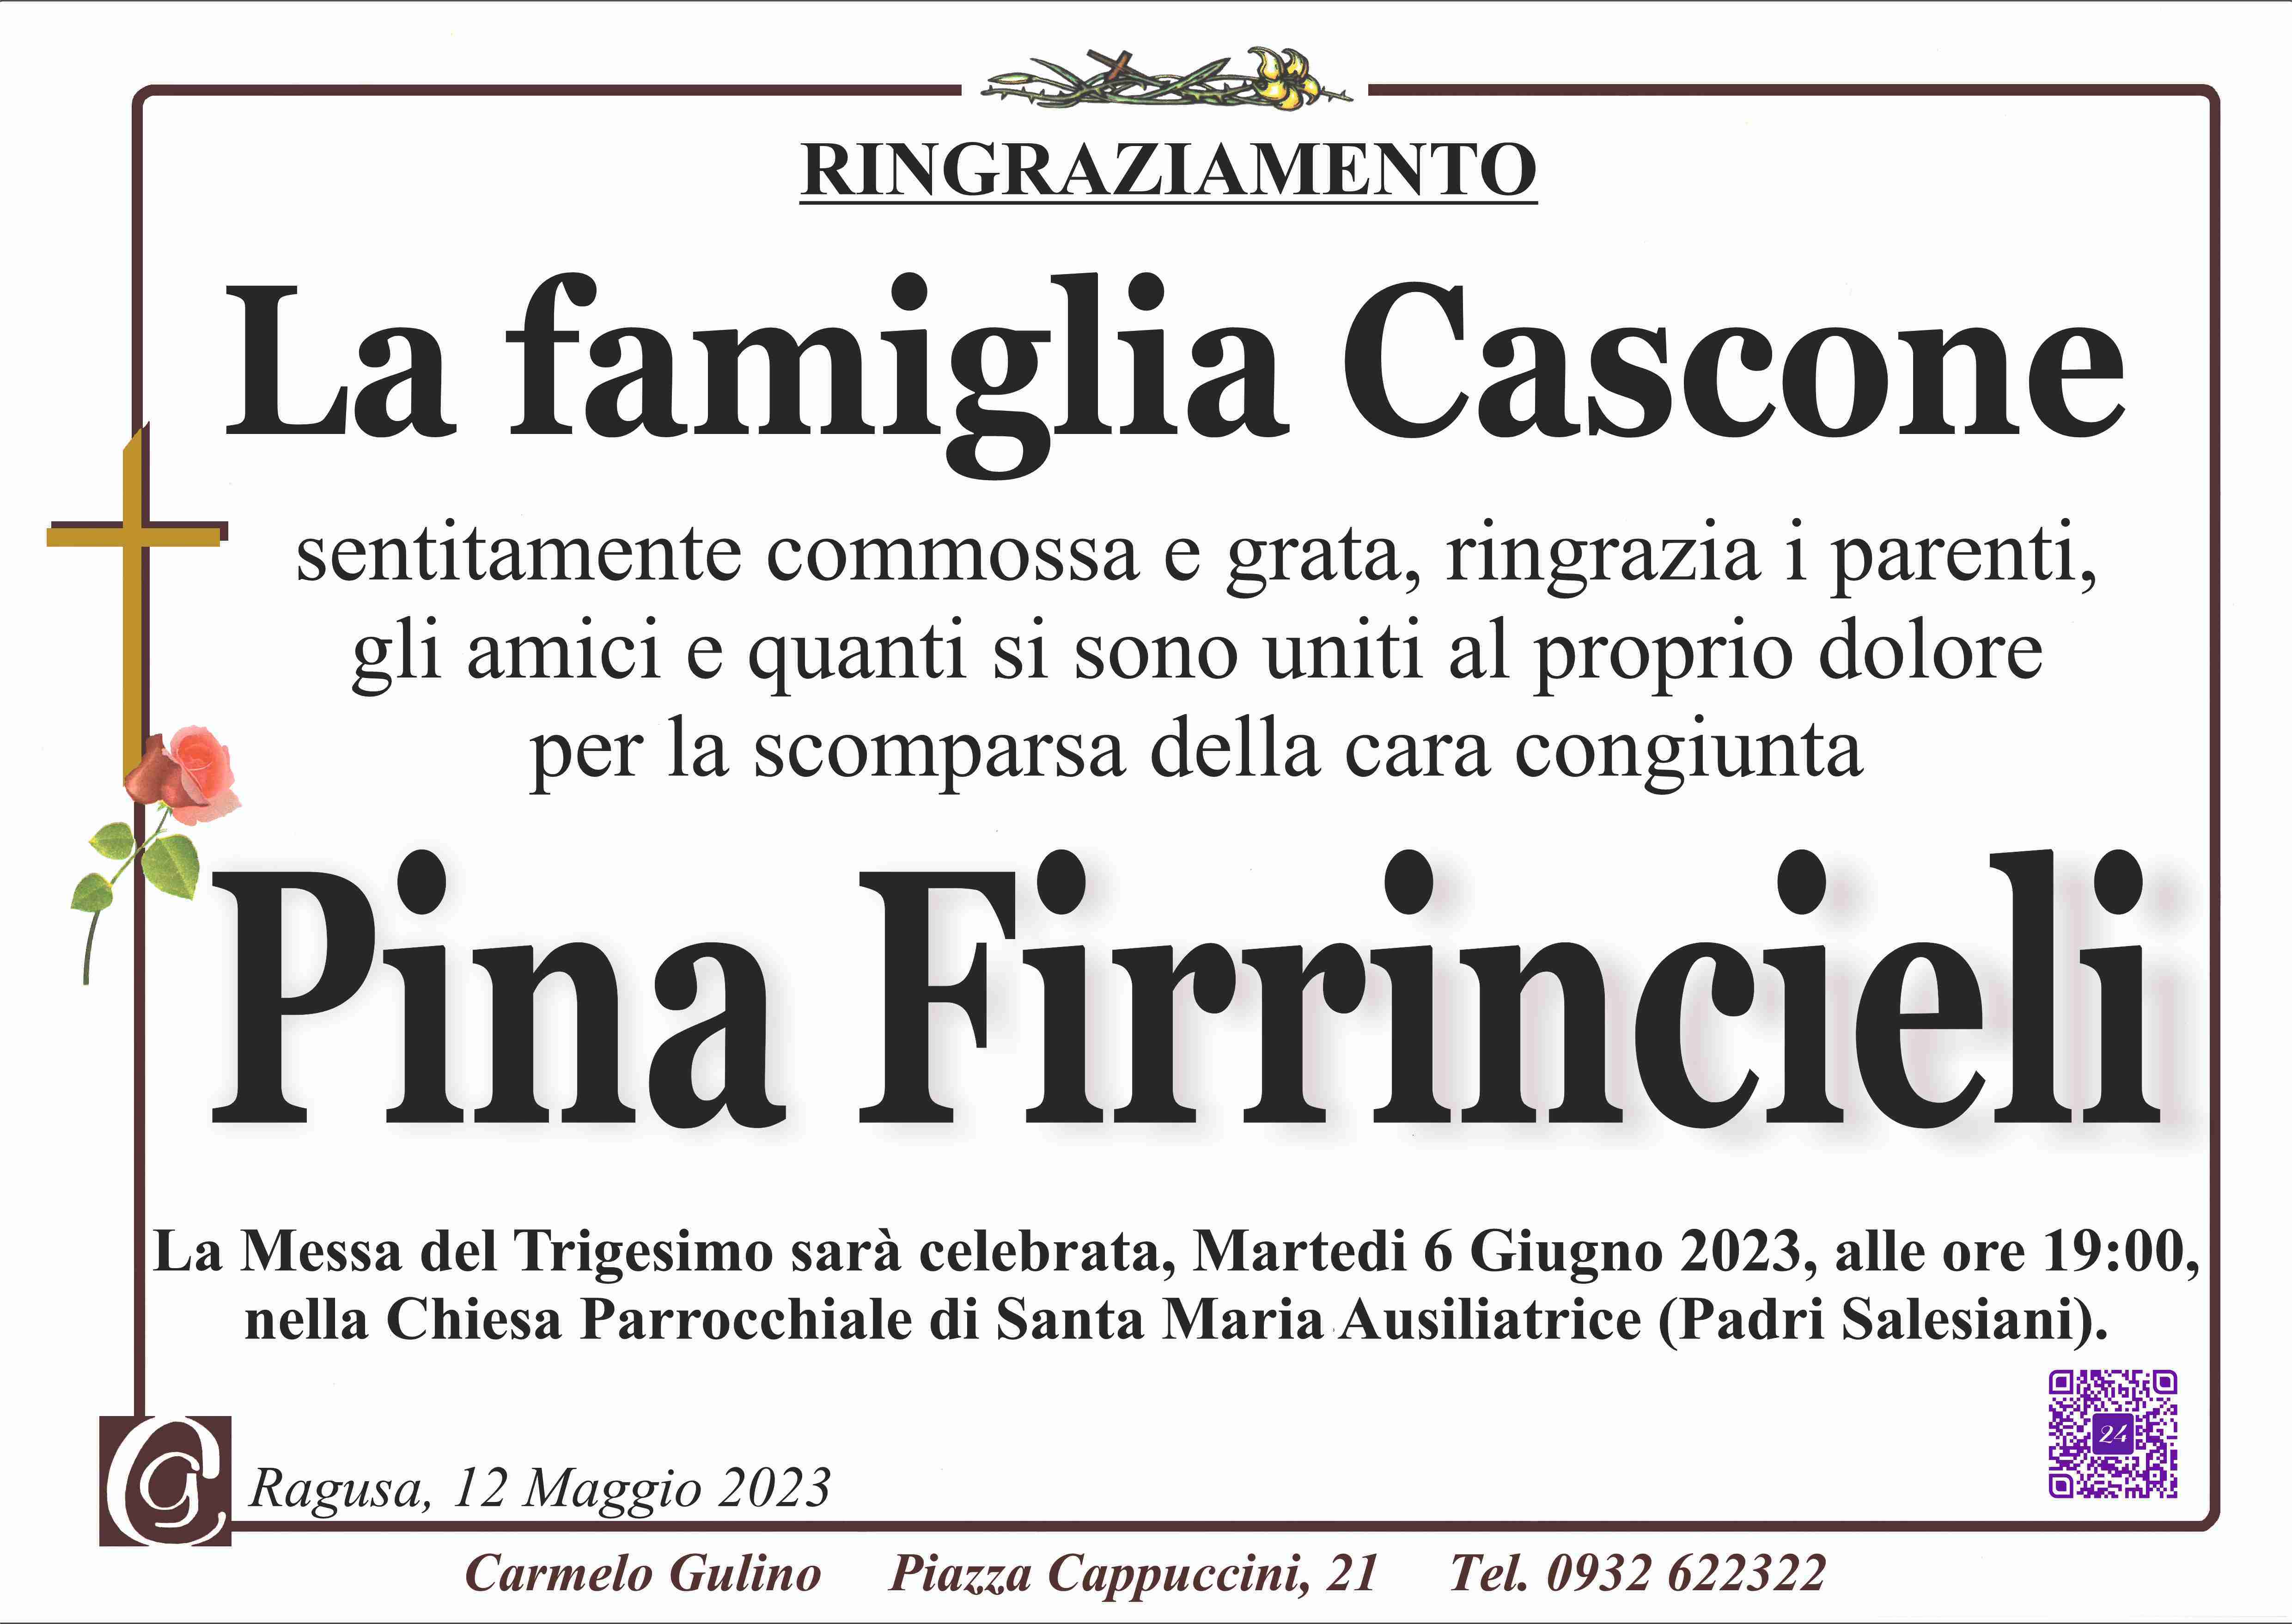 Pina Rosaria Firrincieli